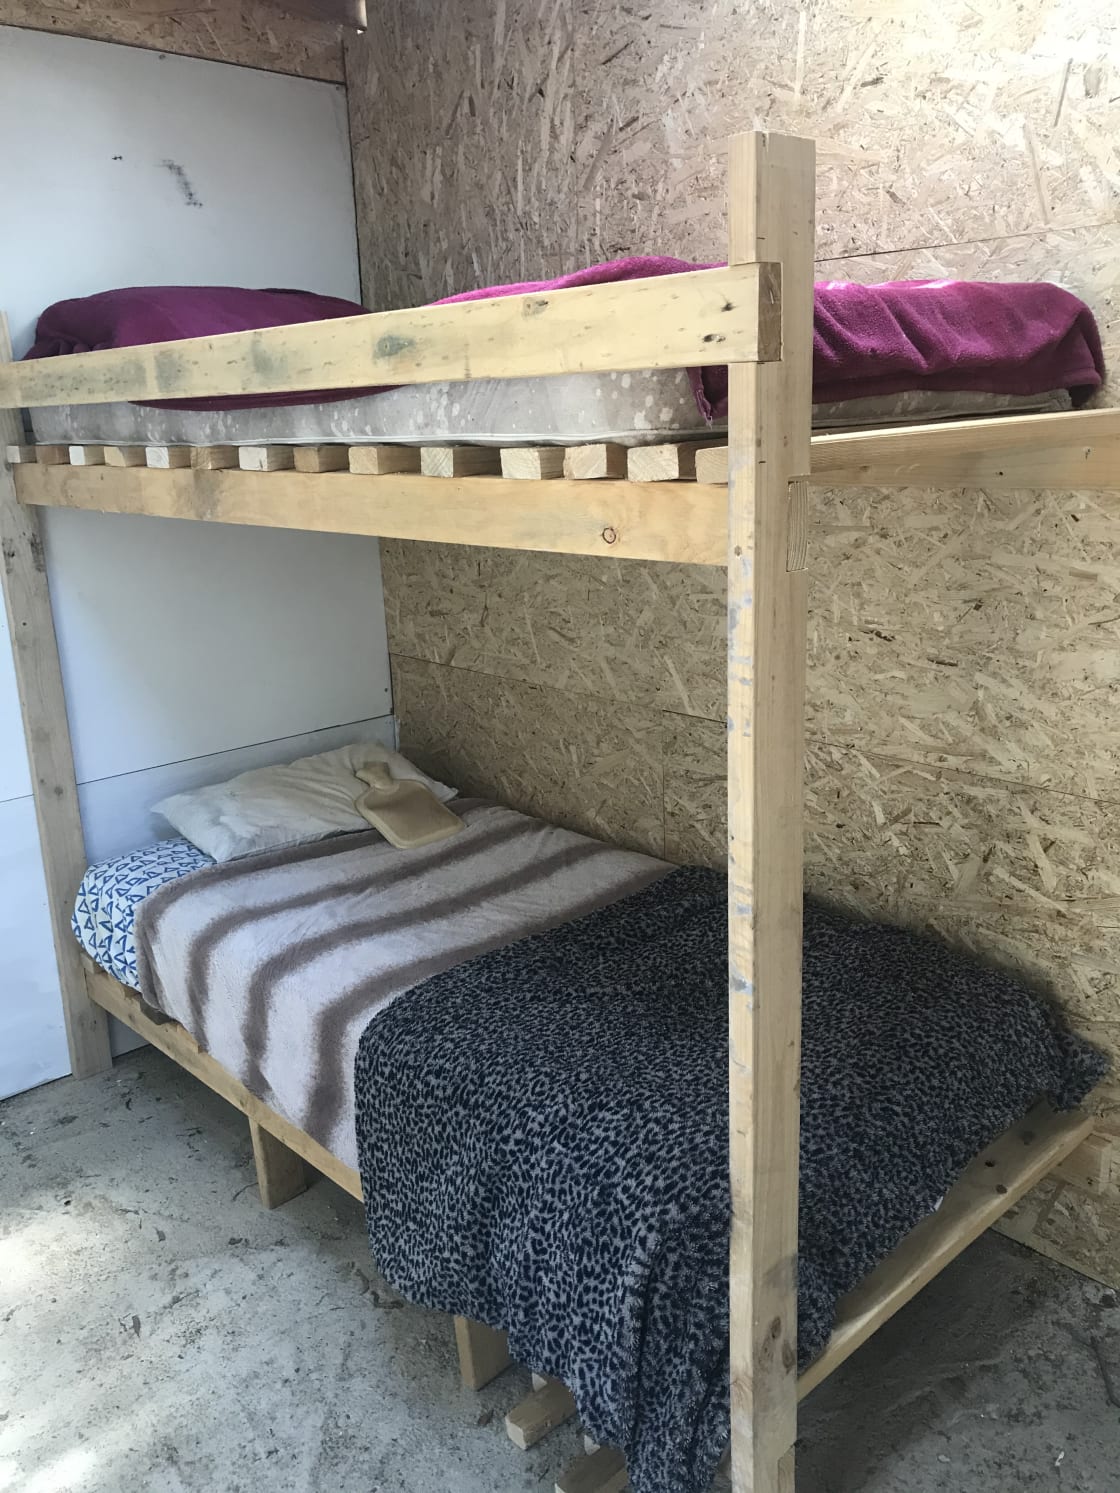 4 bunk beds